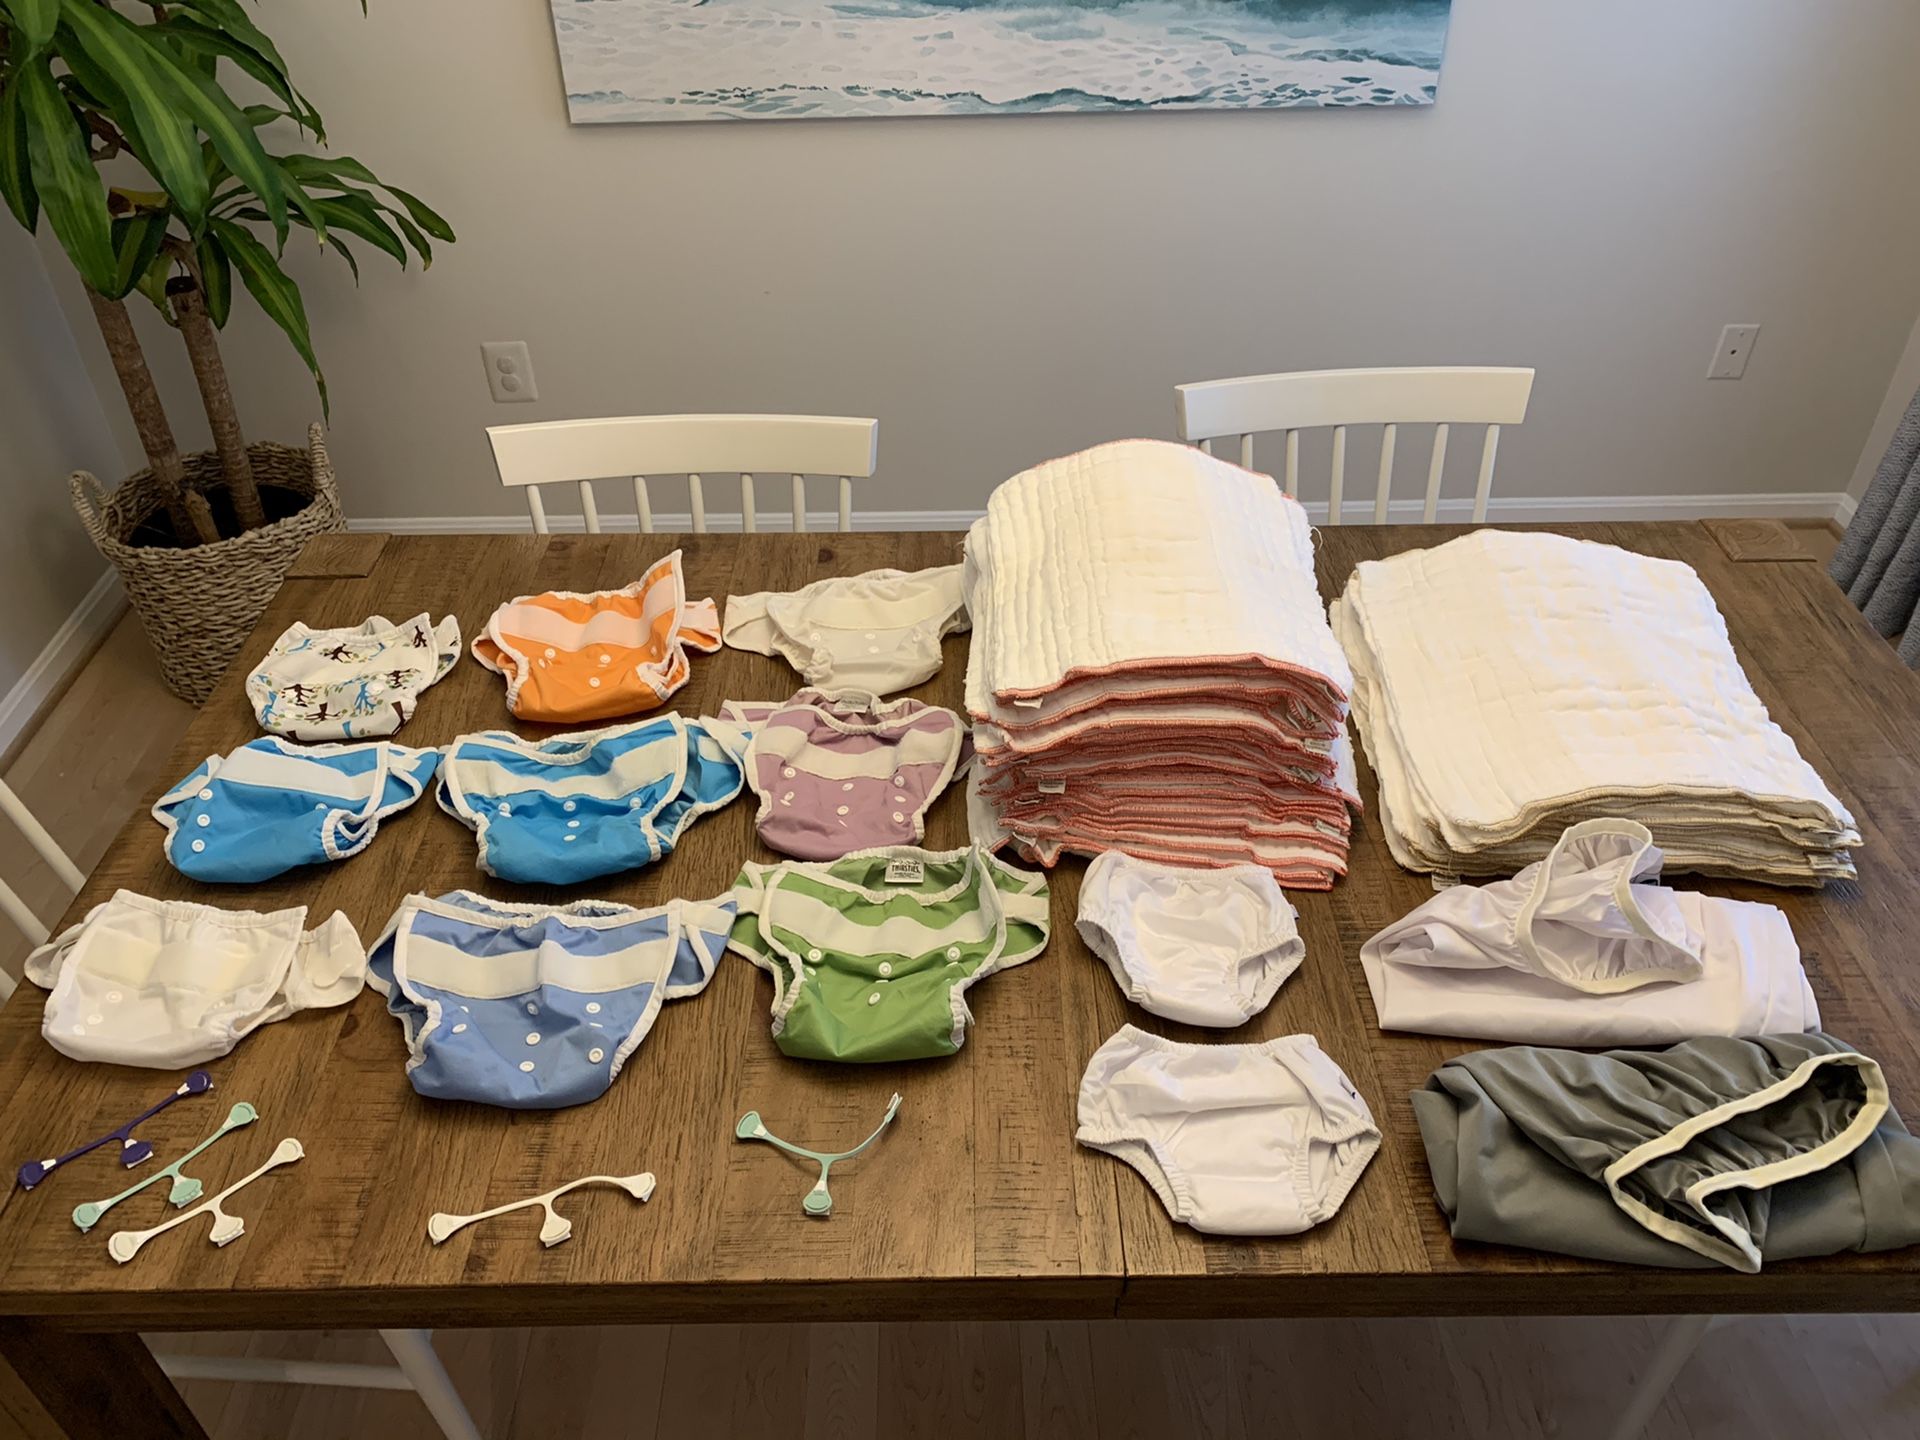 Cloth diaper system